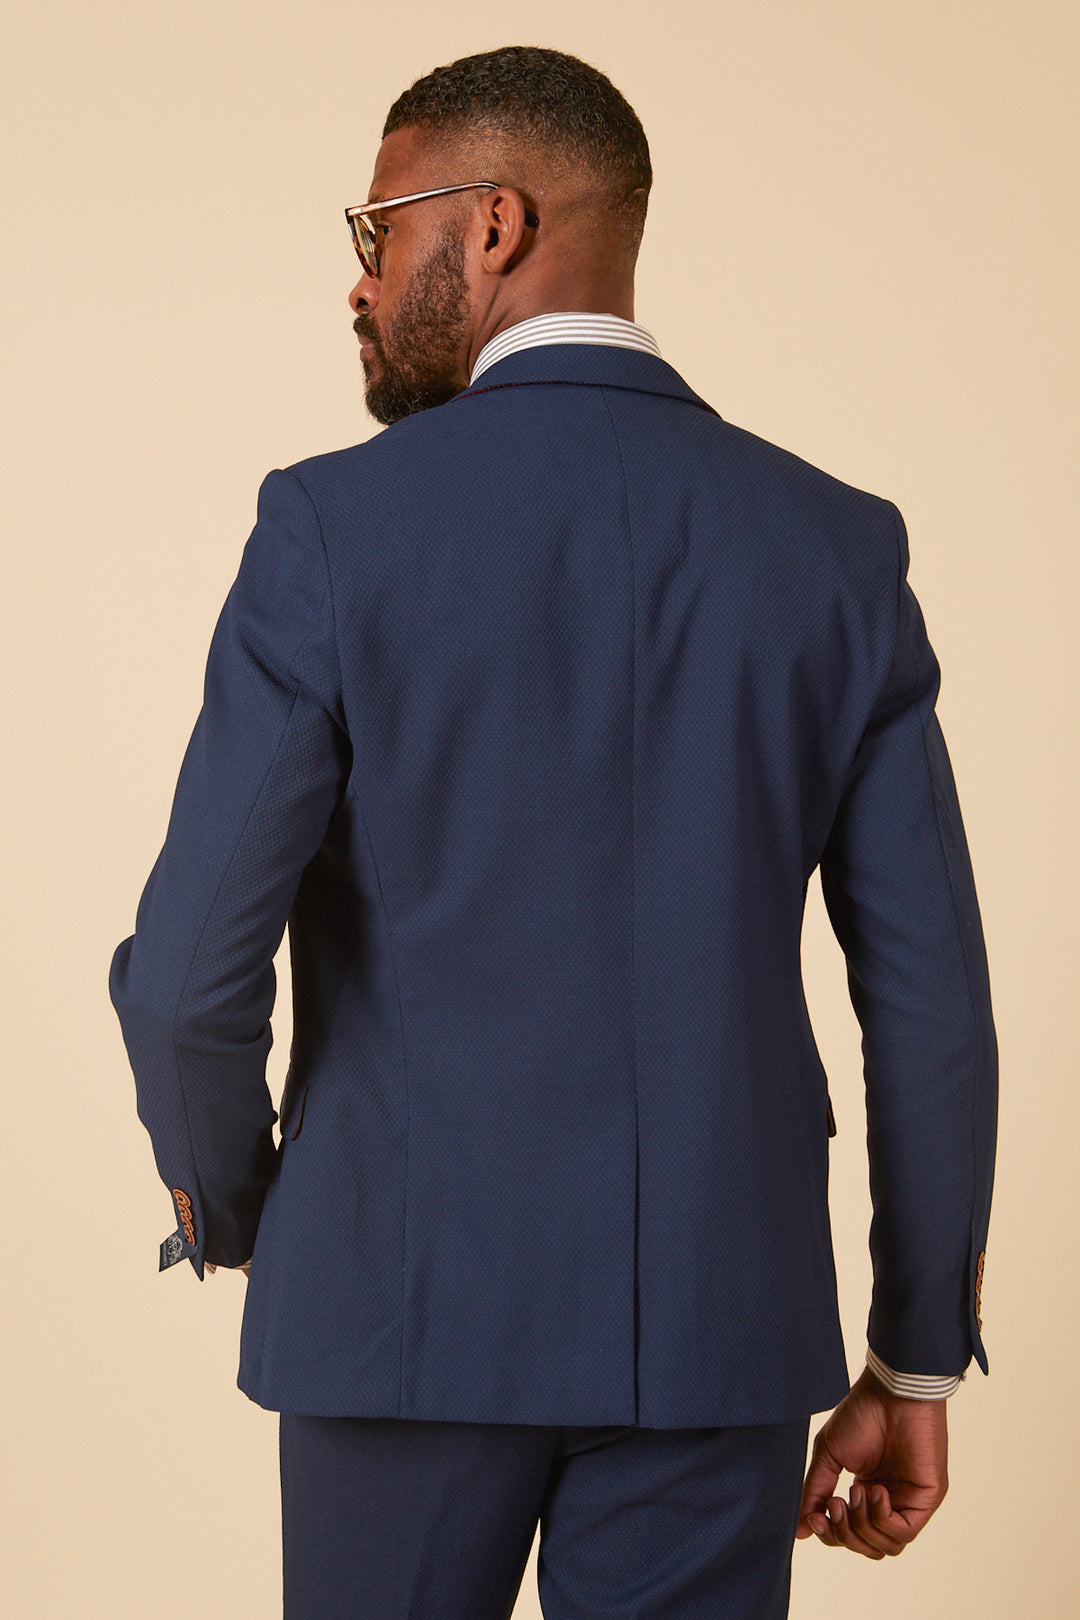 MAX - Royal Blue Two Piece Suit